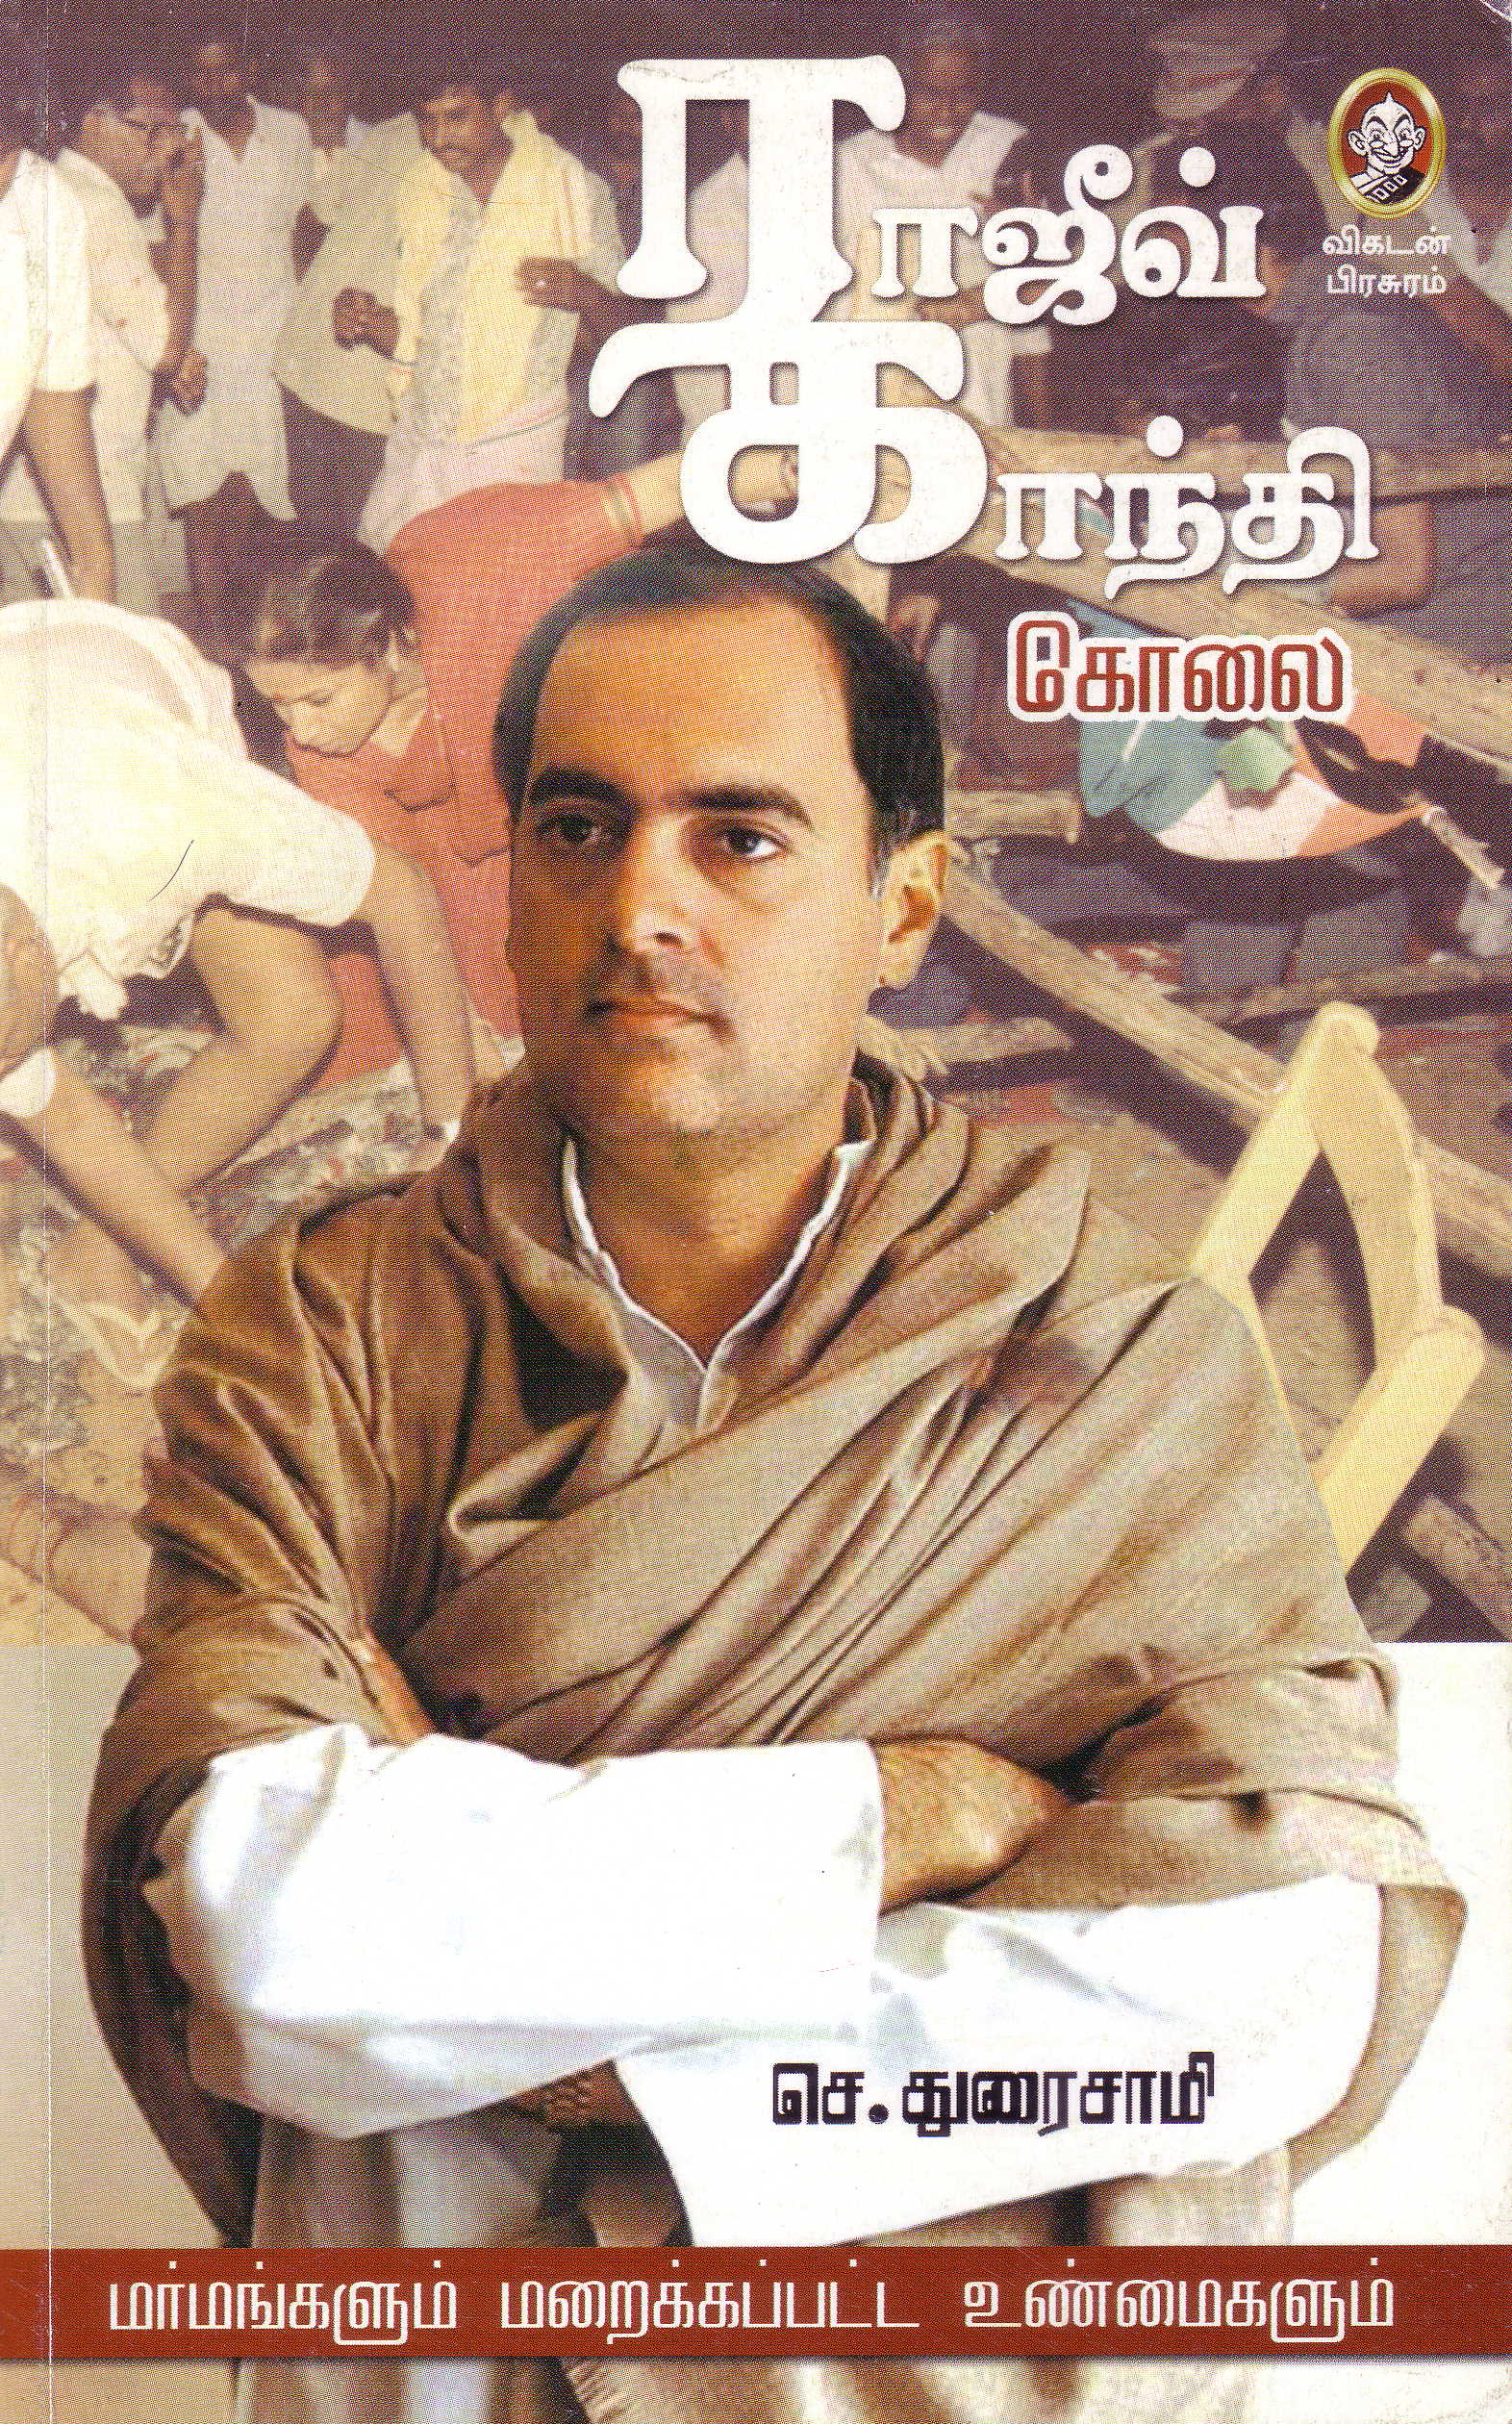 Rajiv Gandhi assassination front cover